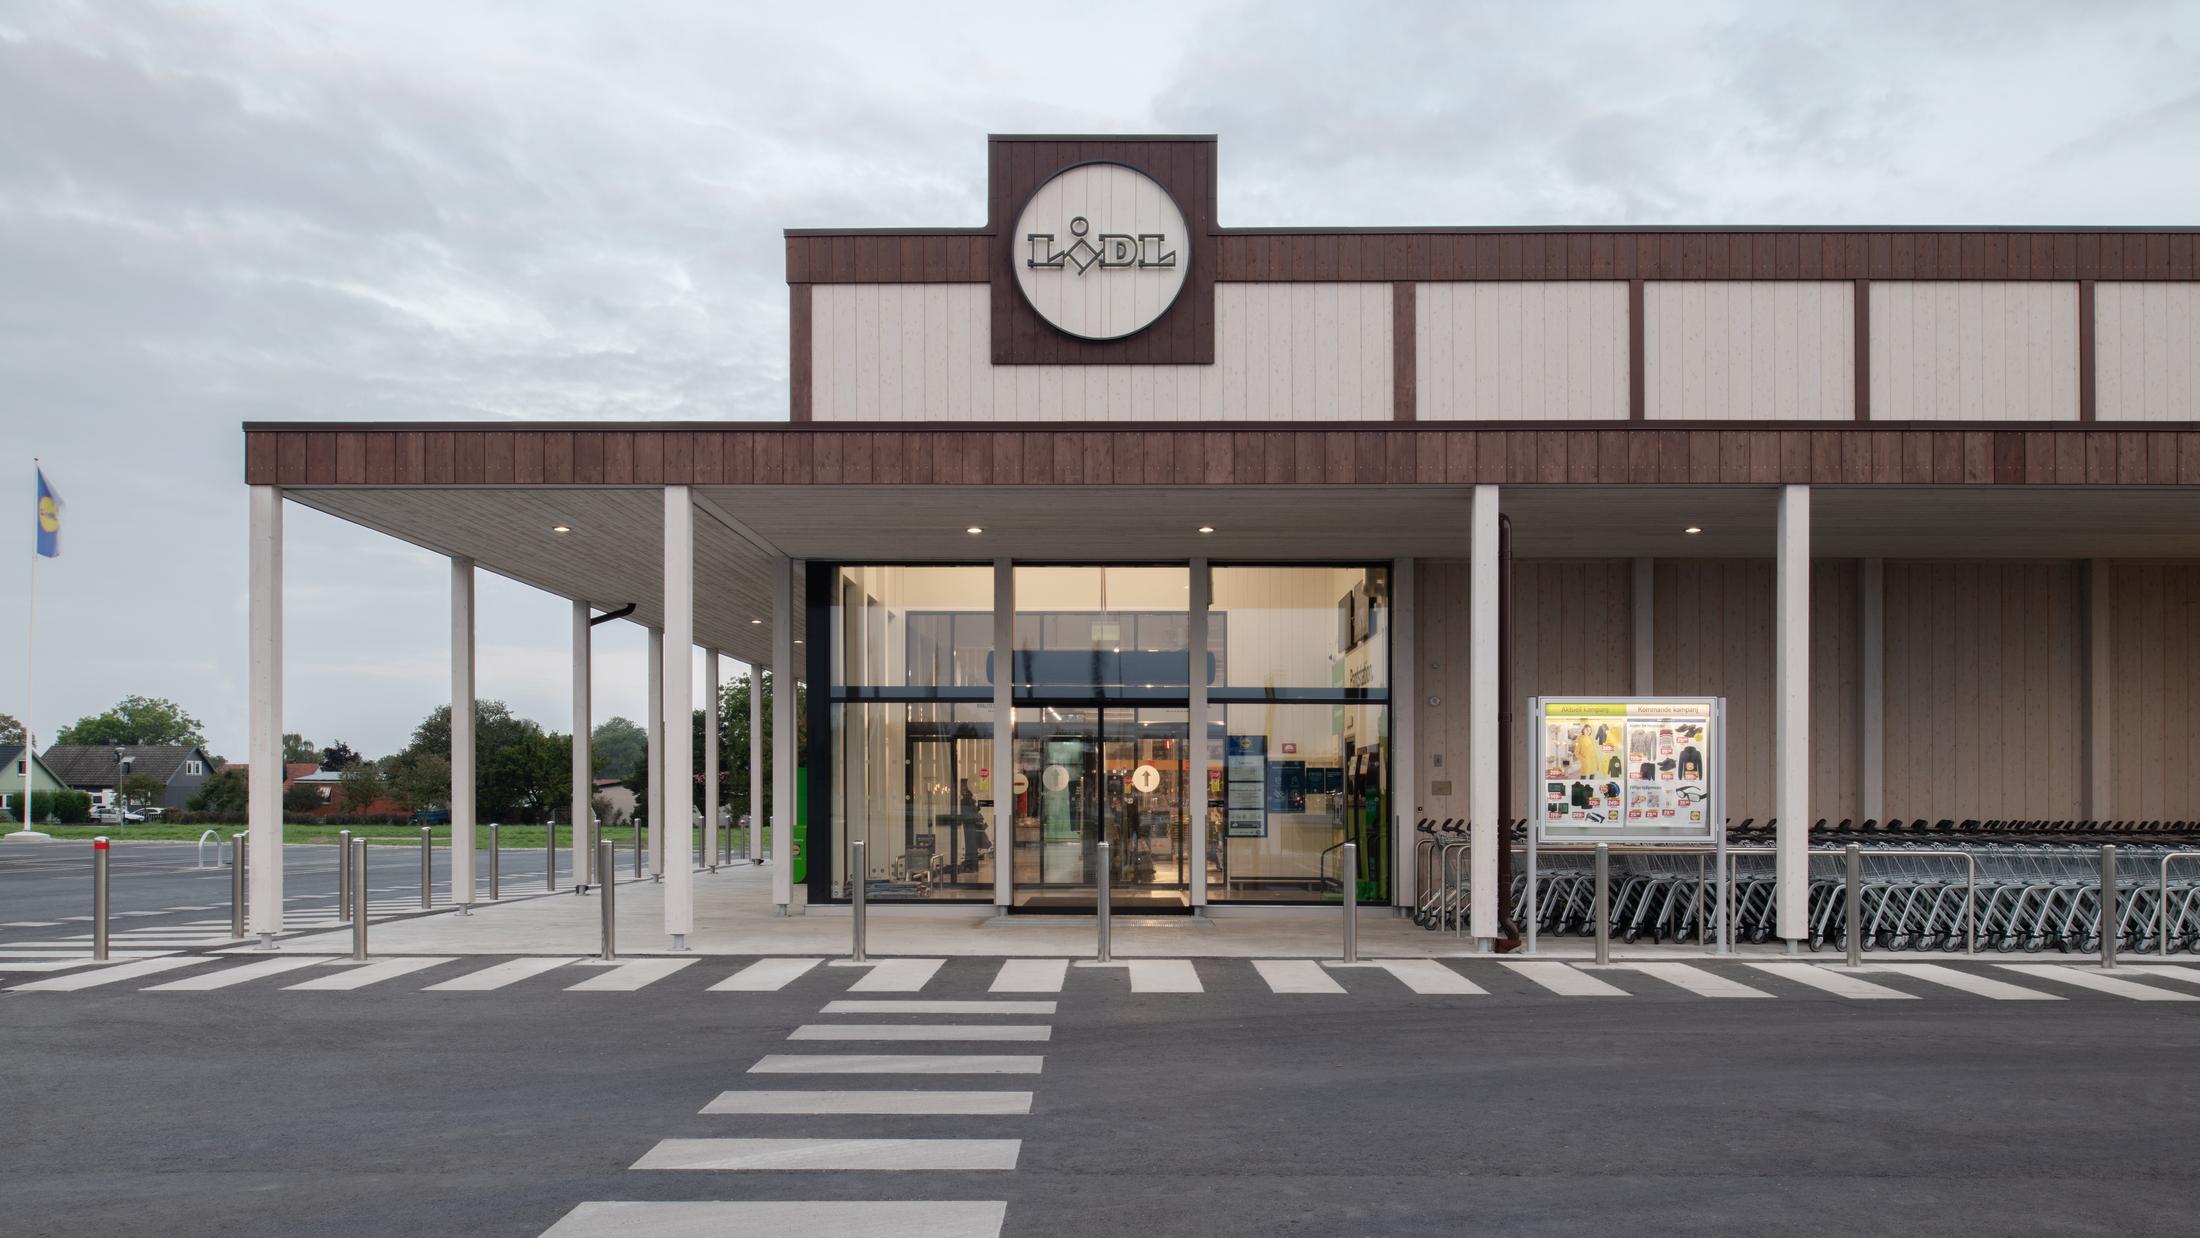 Sveriges första NollCO2-certifierade byggnad – en Lidl-butik i Visby, arkitekt: LINK Arkitektur